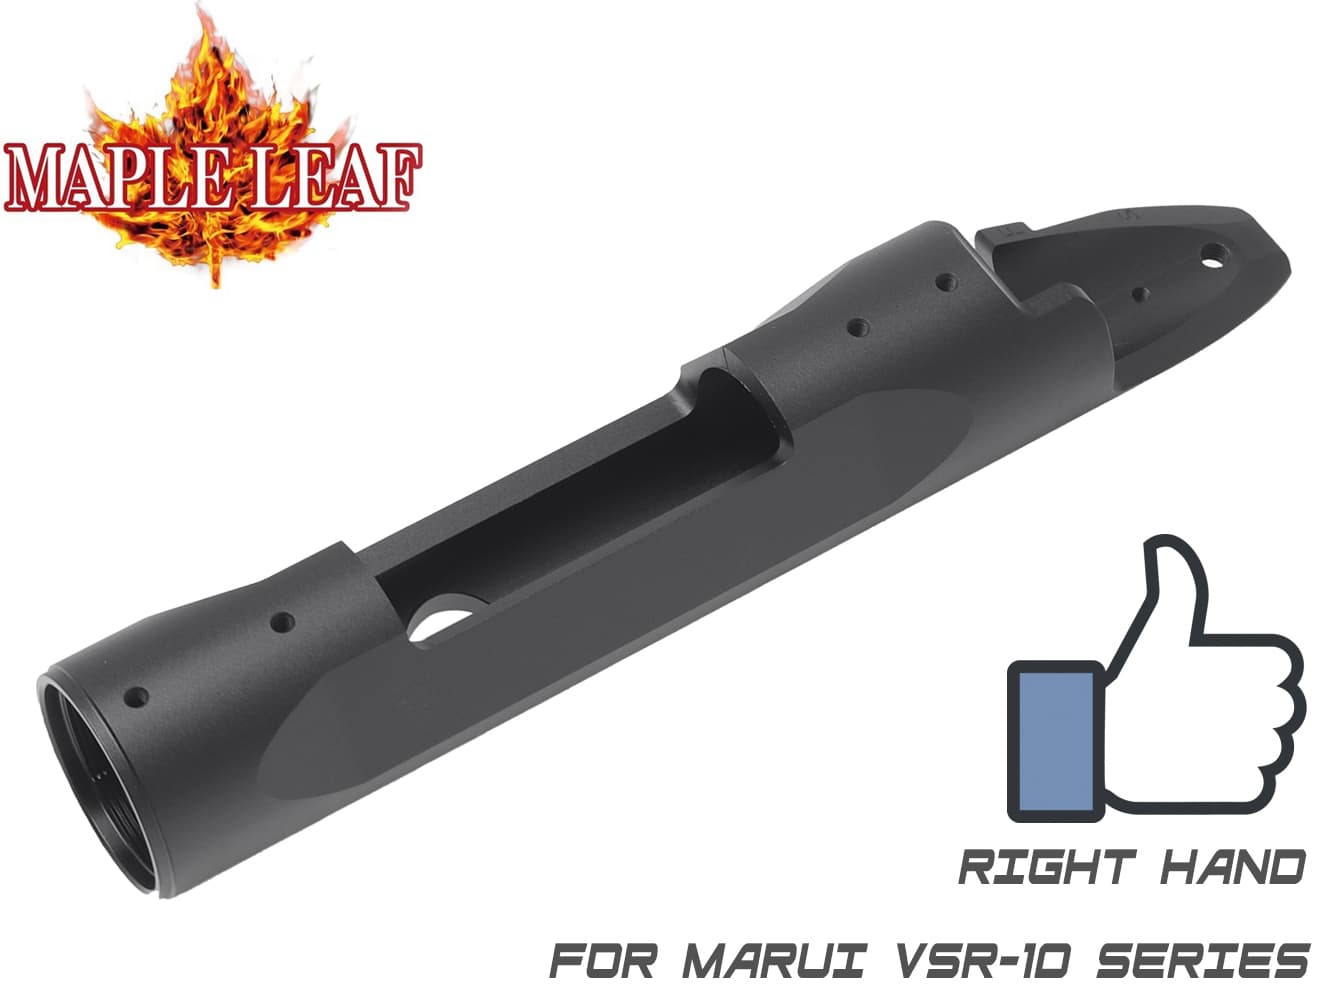 Maple Leaf フルCNC レシーバー for VSR-10 (Type B)◆高精度 高強度アルミ削り出し メタルレシーバー 強度アップ 東京マルイ VSR10対応 レシーバーリング付き